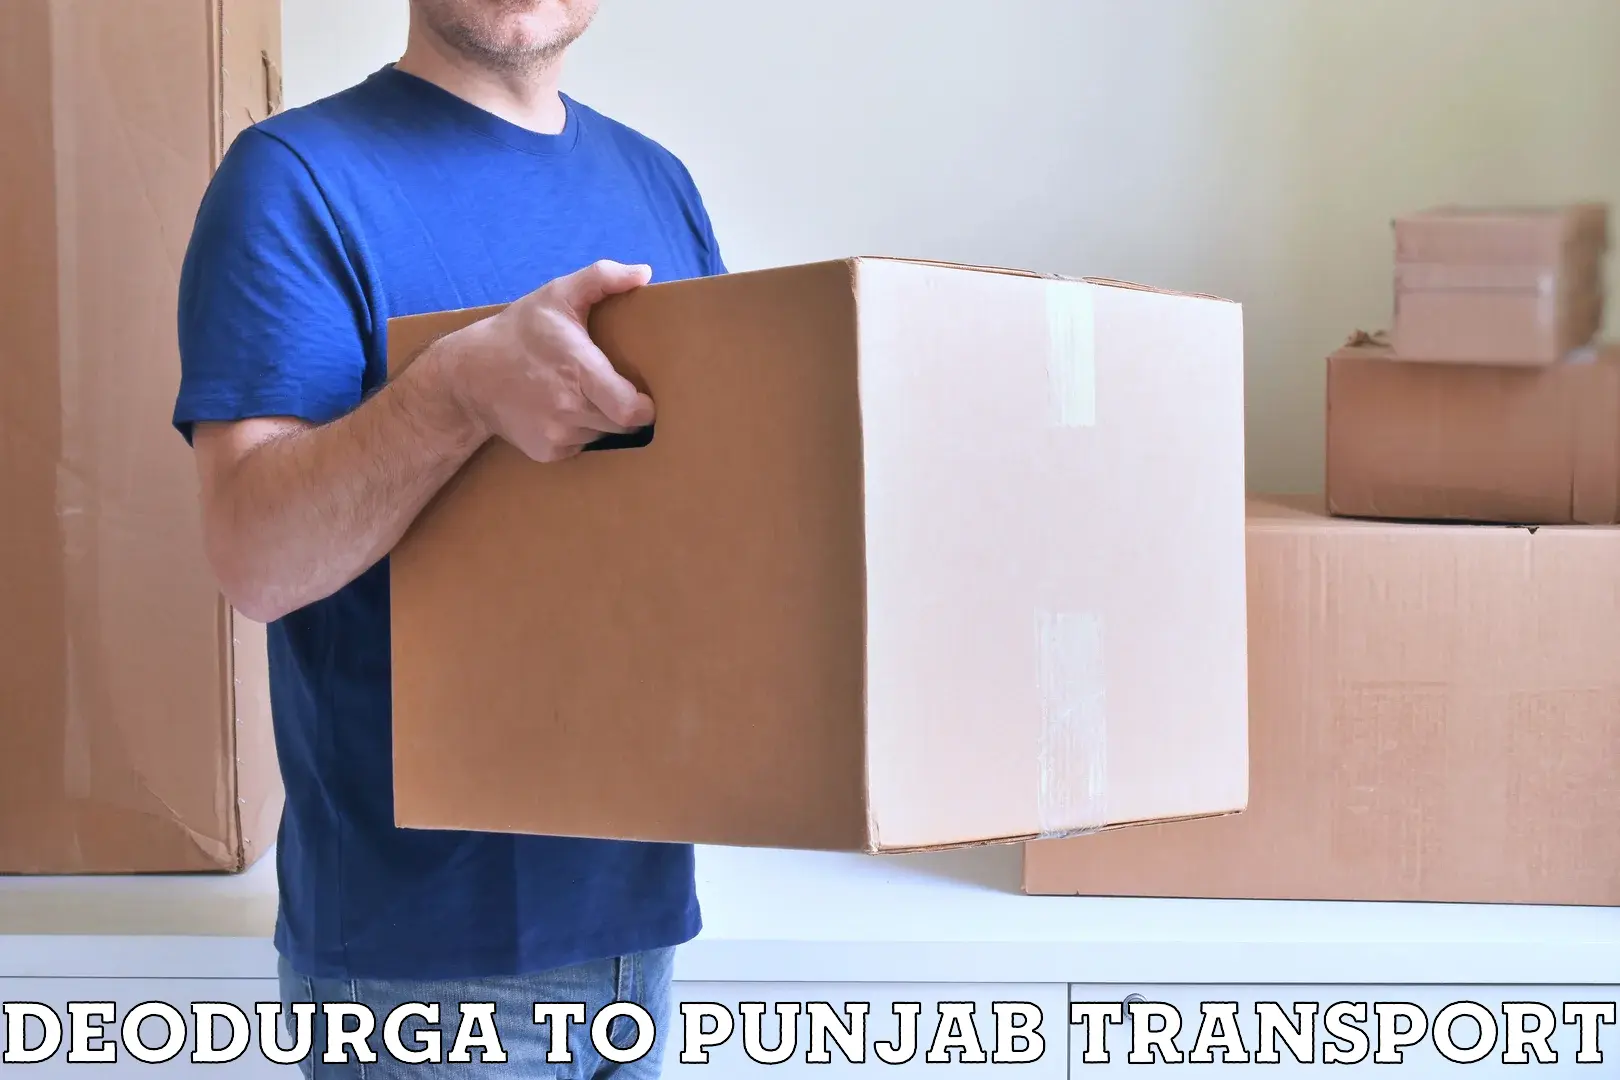 All India transport service Deodurga to Jalandhar